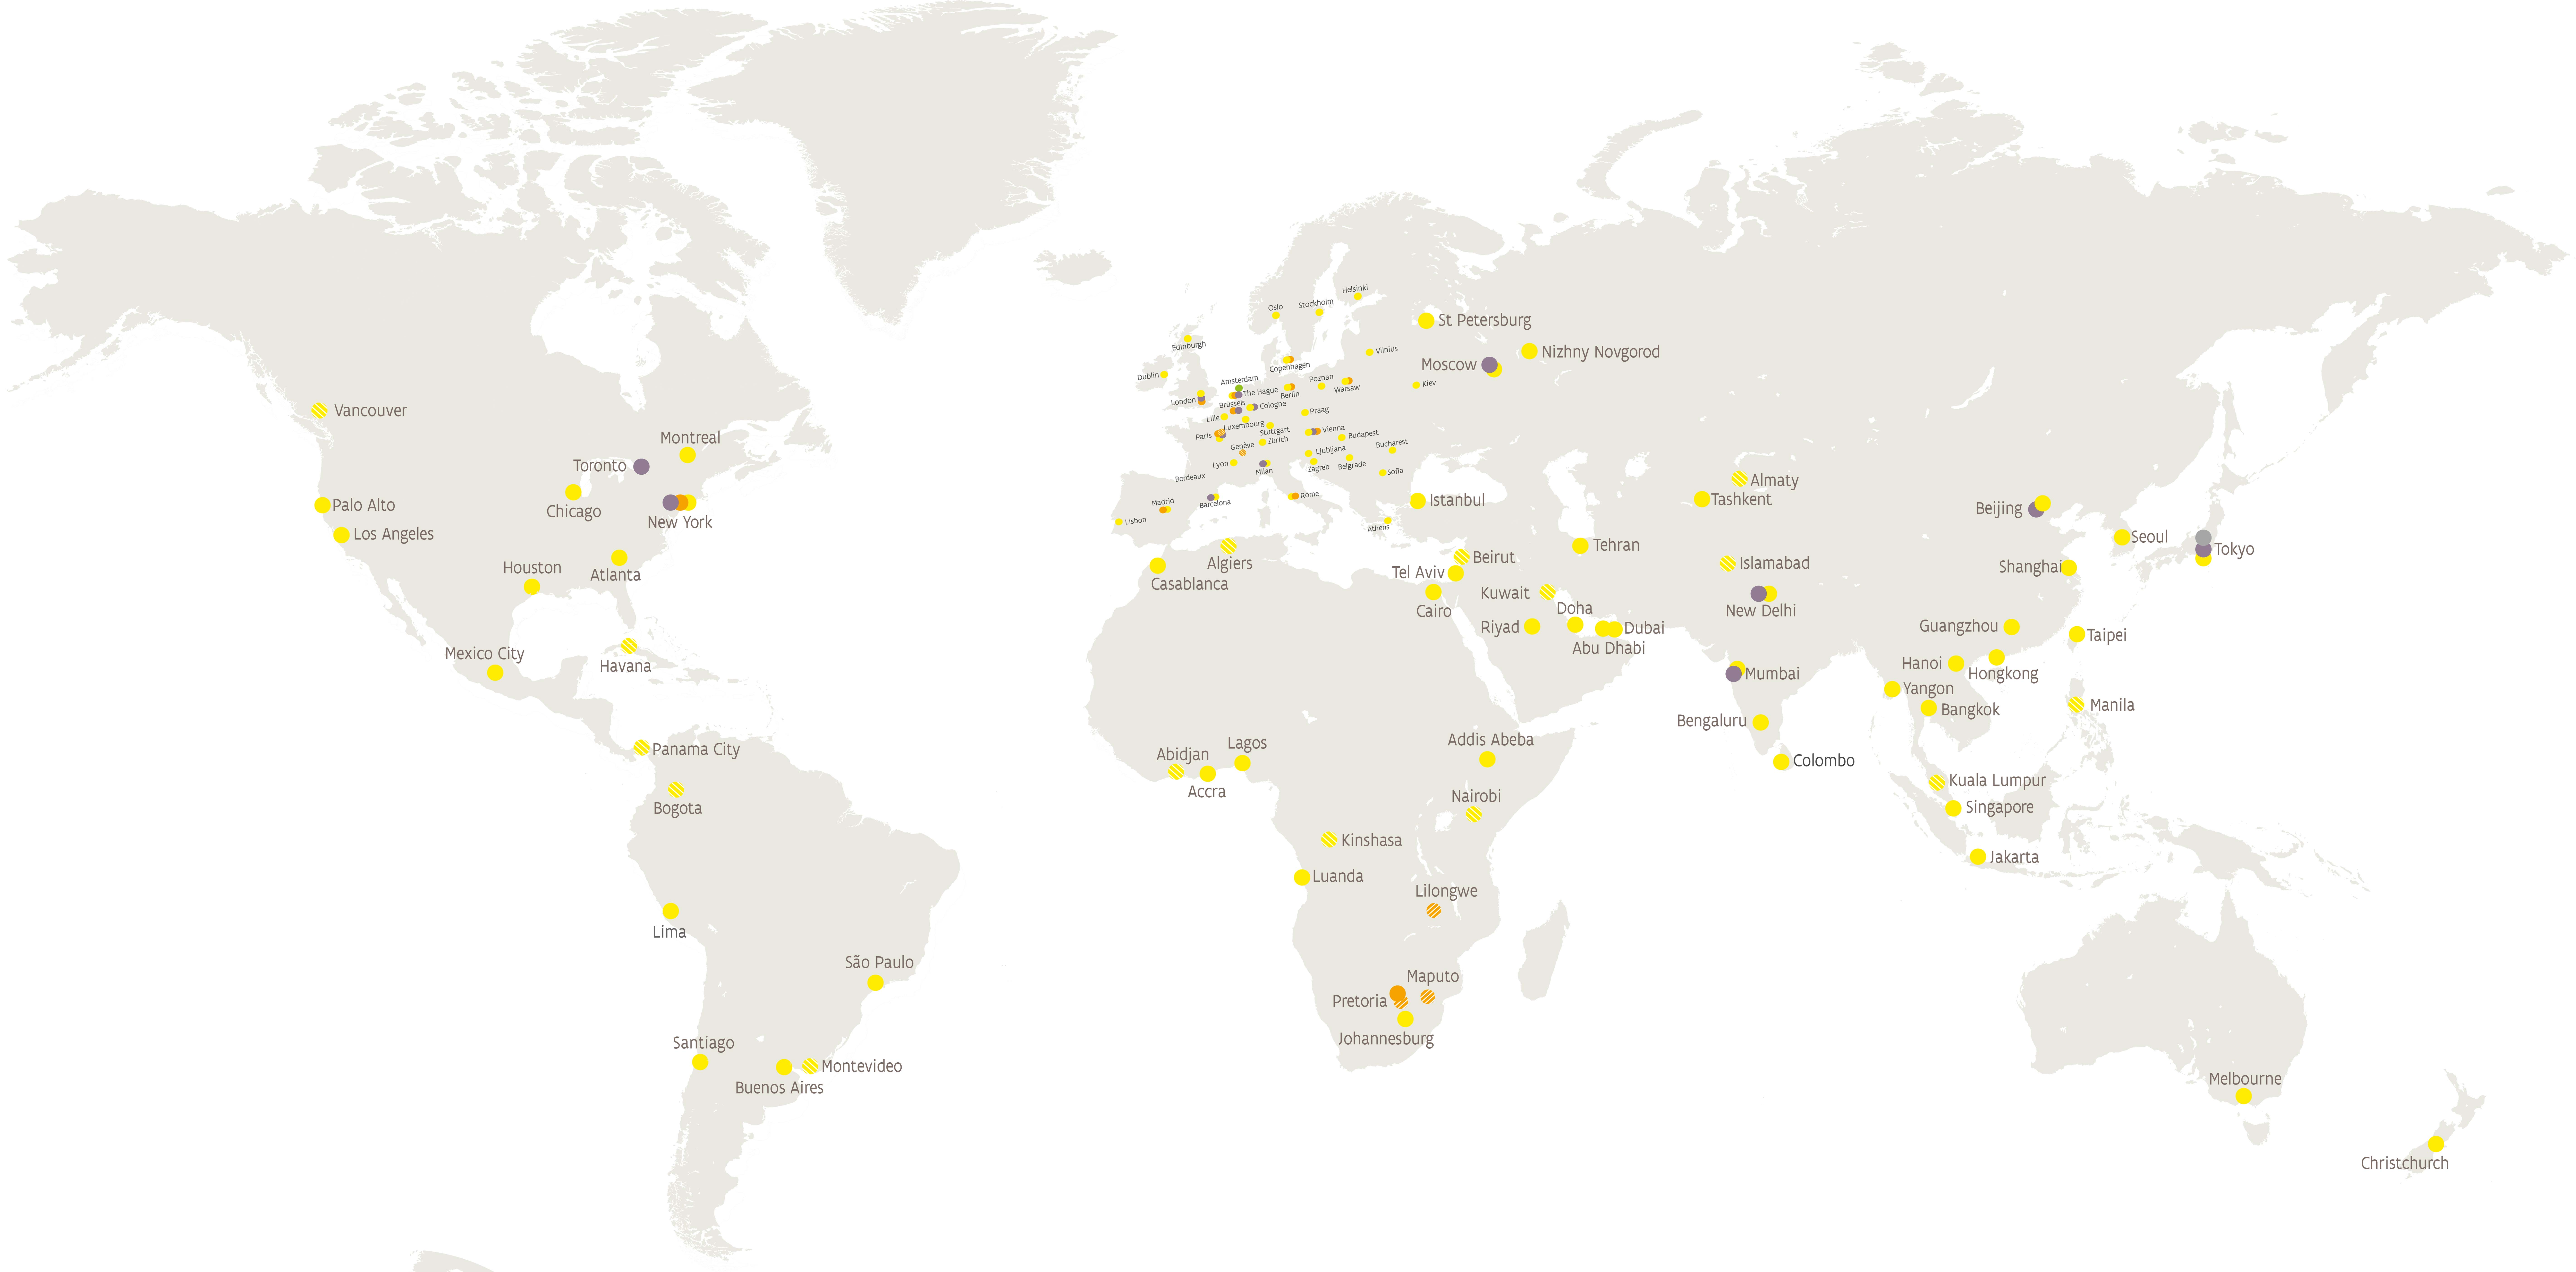 Flanders Global Network